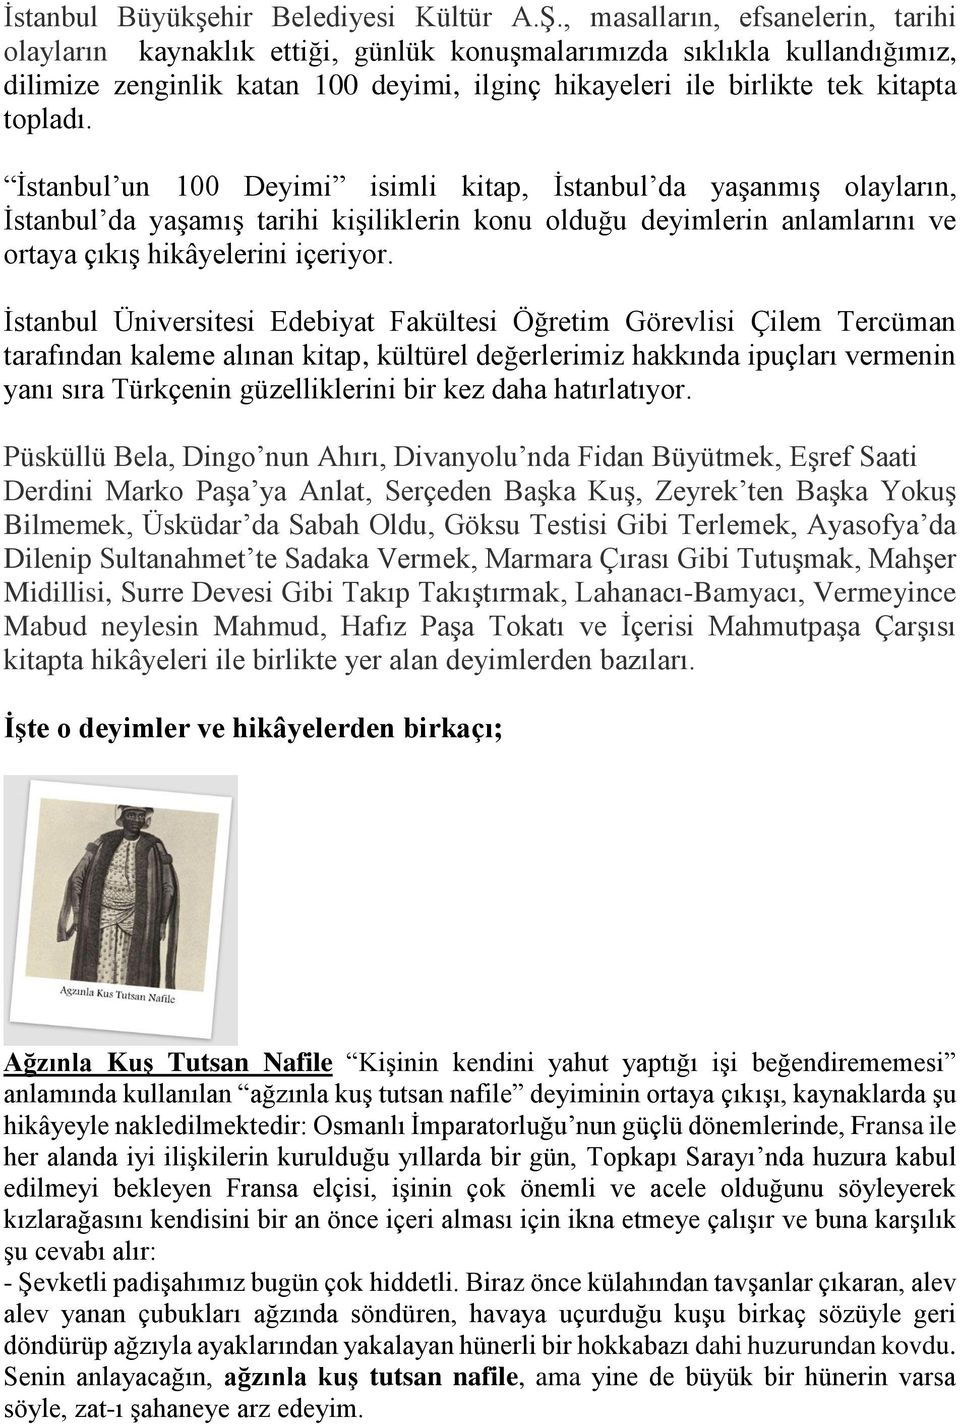 İstanbul un 100 Deyimi isimli kitap, İstanbul da yaşanmış olayların, İstanbul da yaşamış tarihi kişiliklerin konu olduğu deyimlerin anlamlarını ve ortaya çıkış hikâyelerini içeriyor.